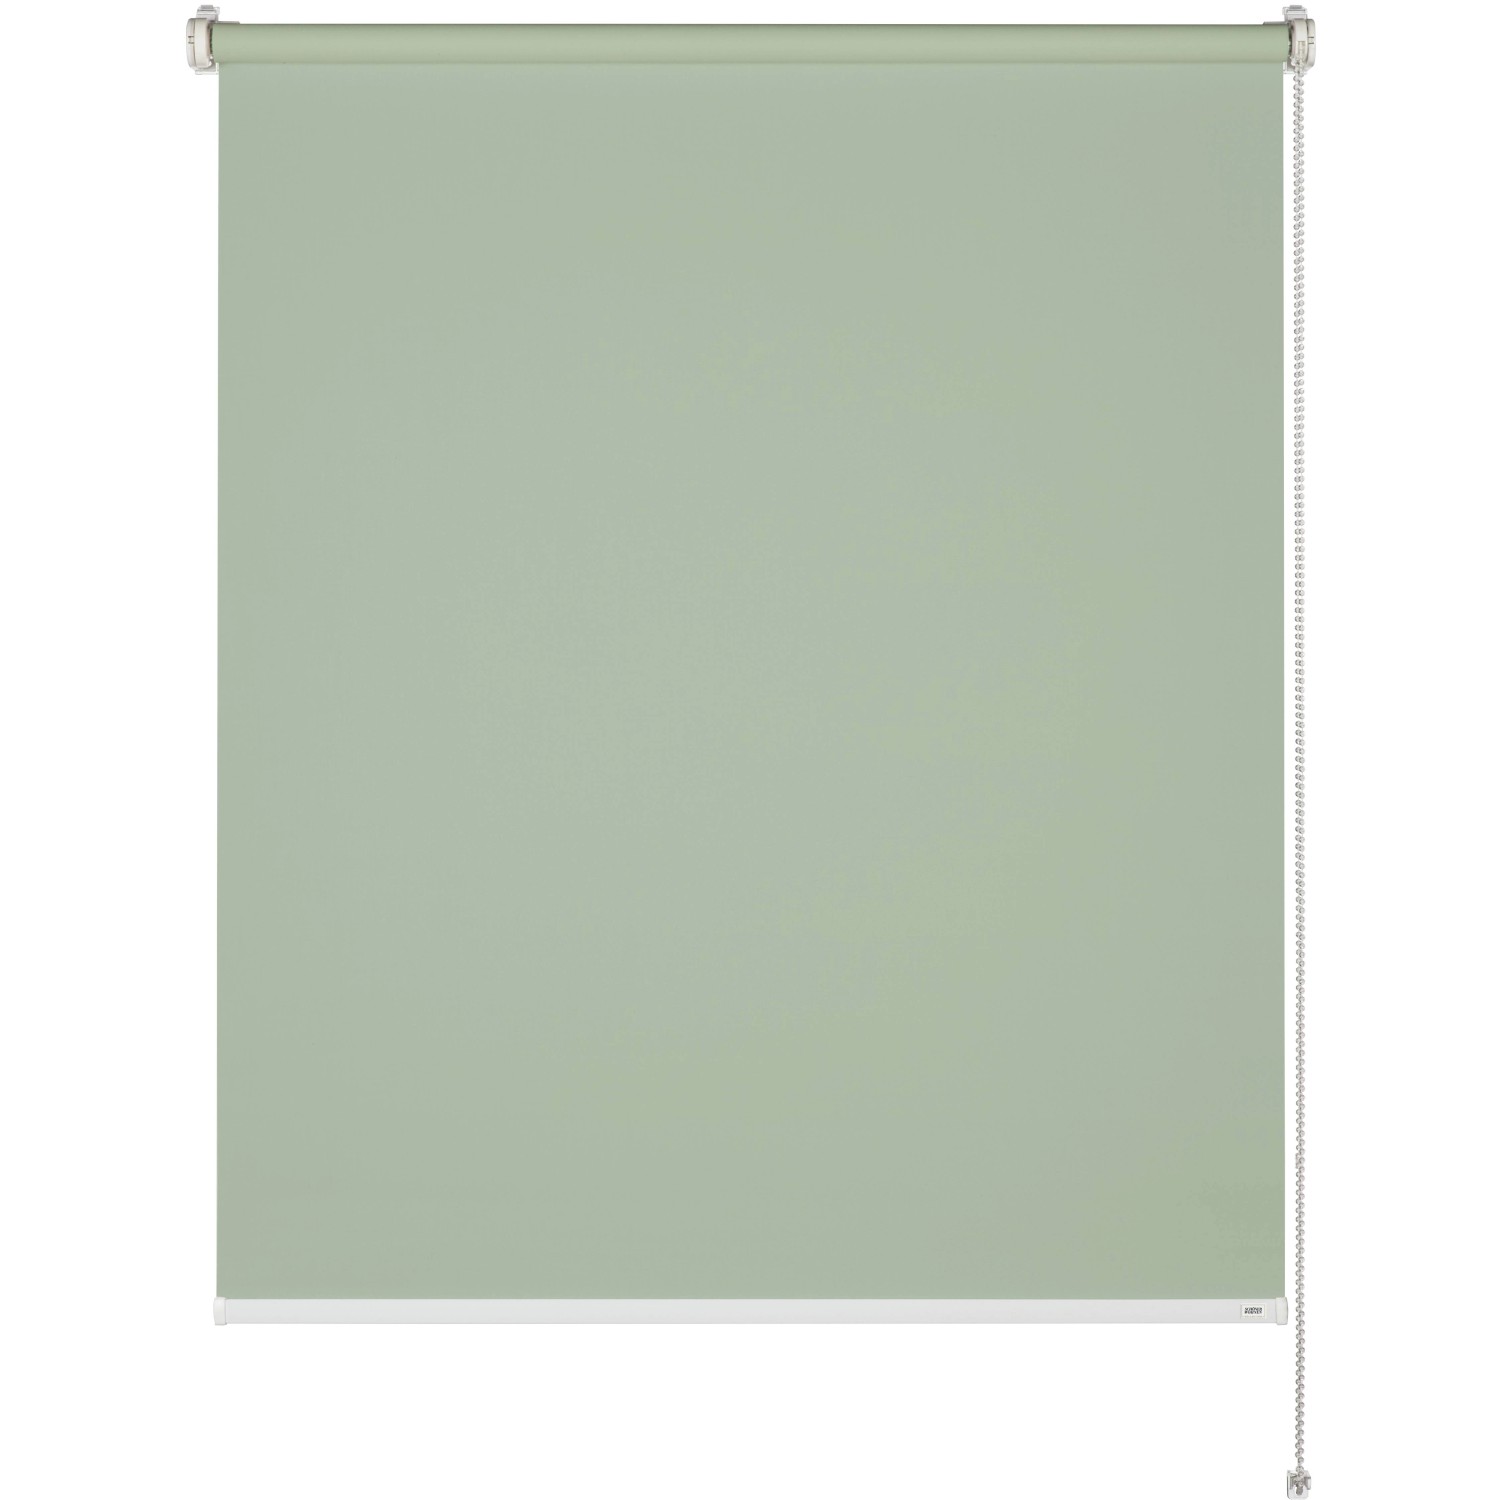 Schöner Wohnen Tageslicht-Rollo Tizia 100 cm x 150 cm Grün von Schöner Wohnen Kollektion